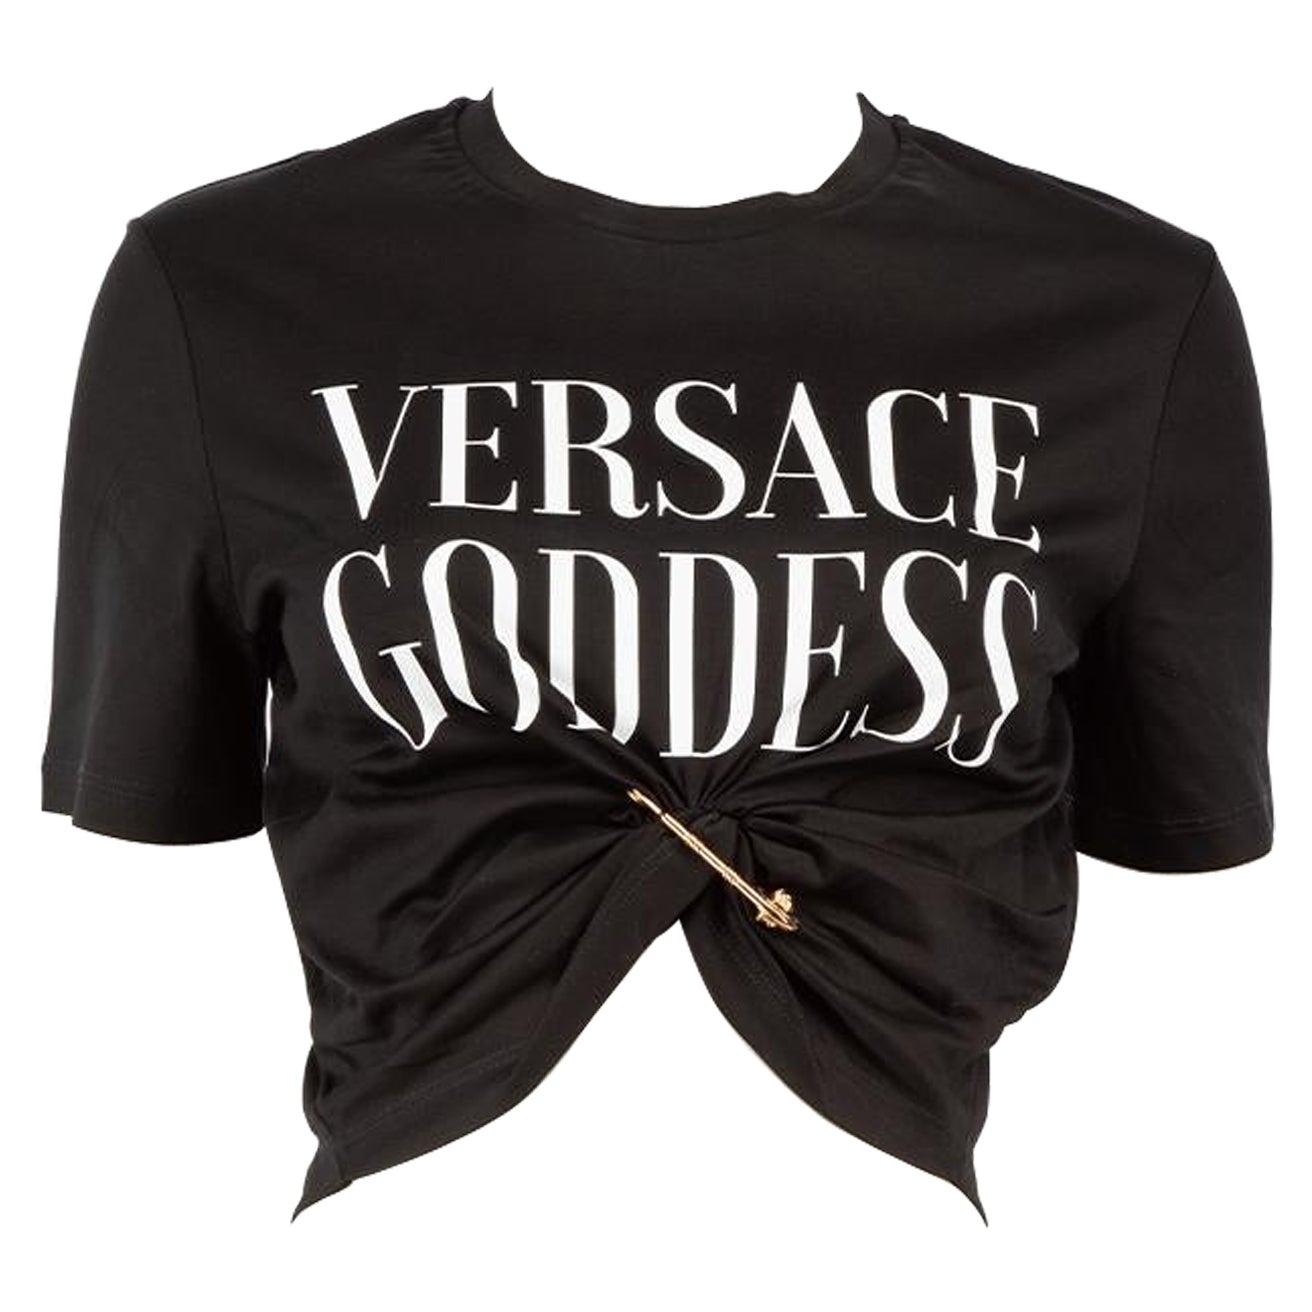 Versace Schwarzes T-Shirt Goddess mit Sicherheitsnadel Versace Goddess Größe XXS im Angebot